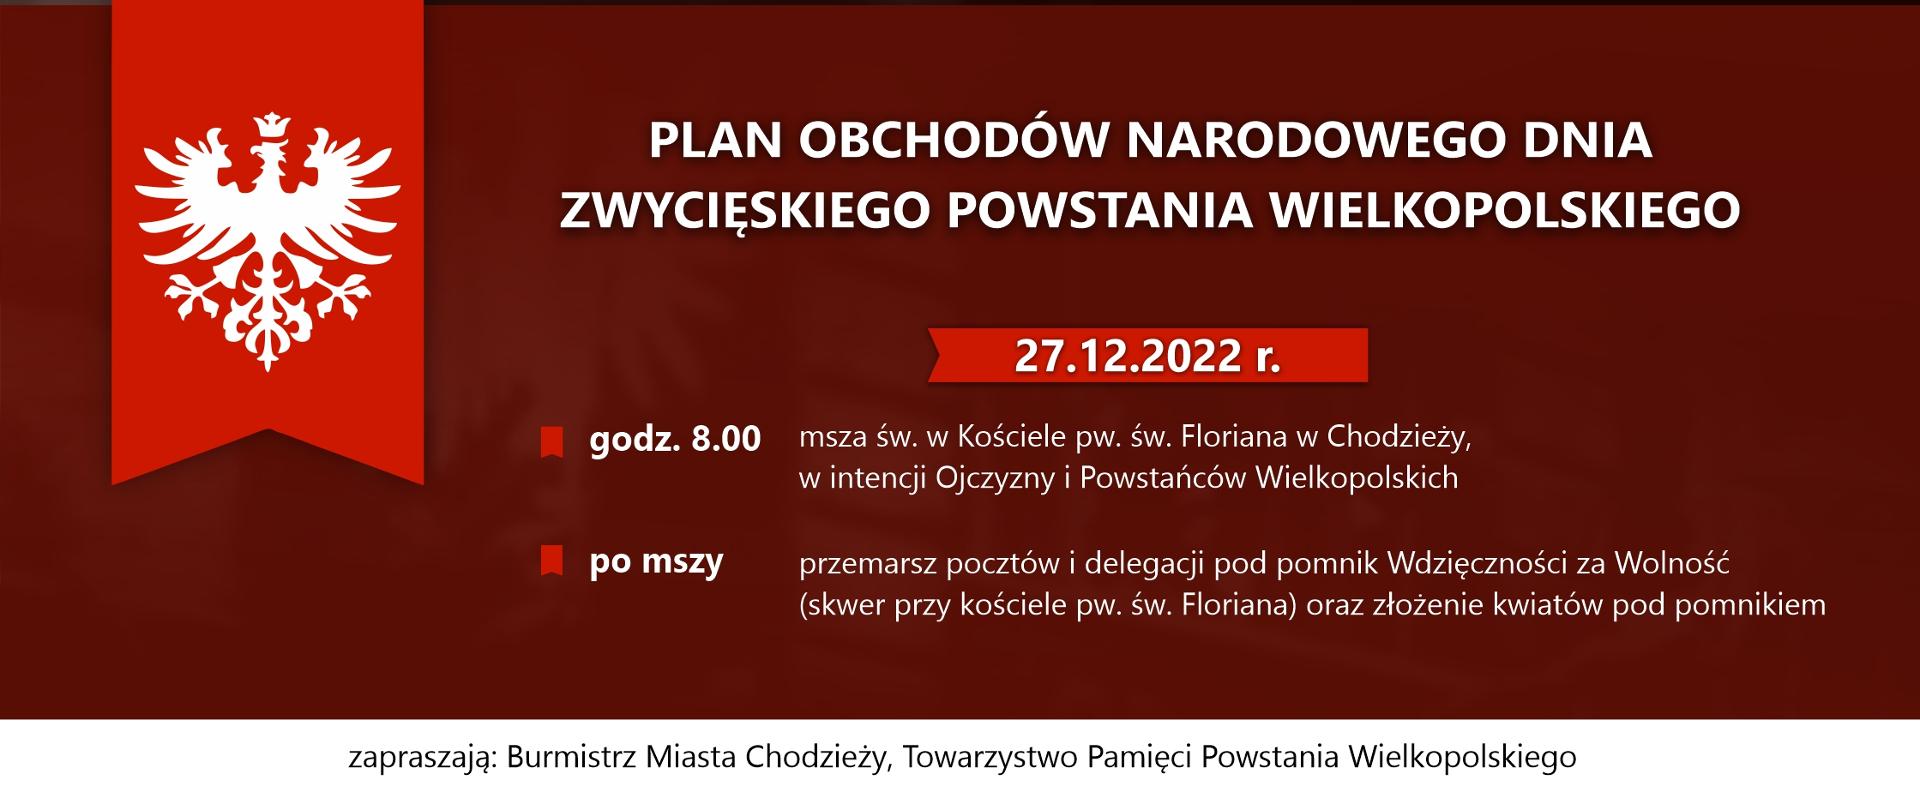 Plakat - obchody Dnia Zwycięskiego Powstania Wielkopolskiego 